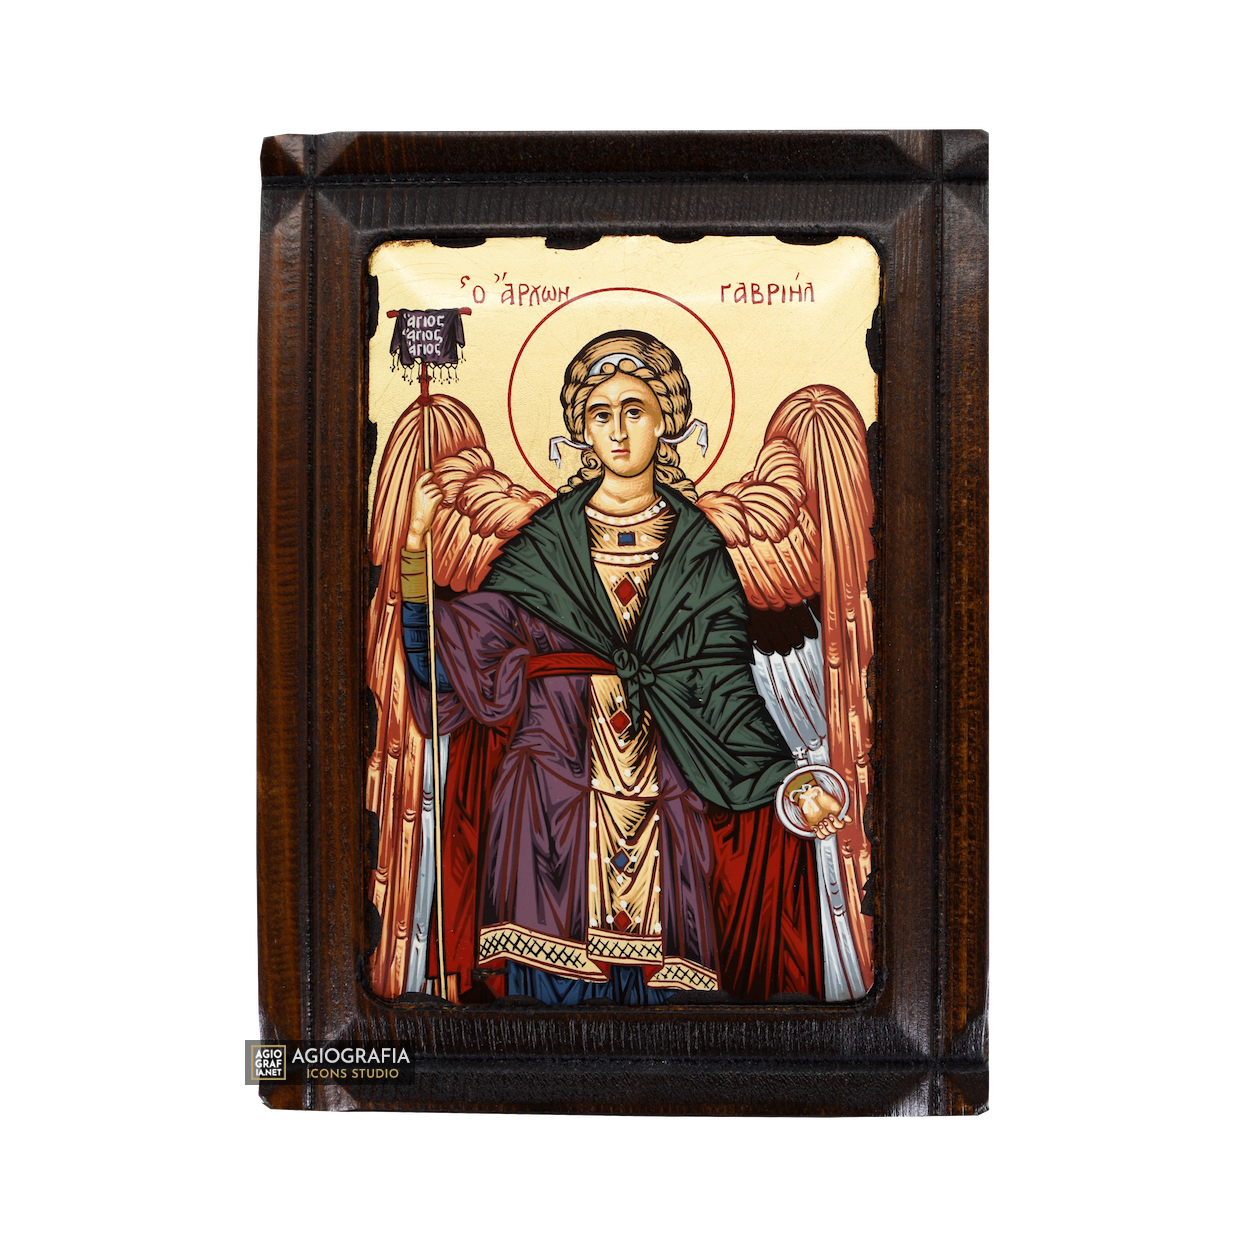 Archangel Gabriel Greek Orthodox Wood Icon with Gold Leaf